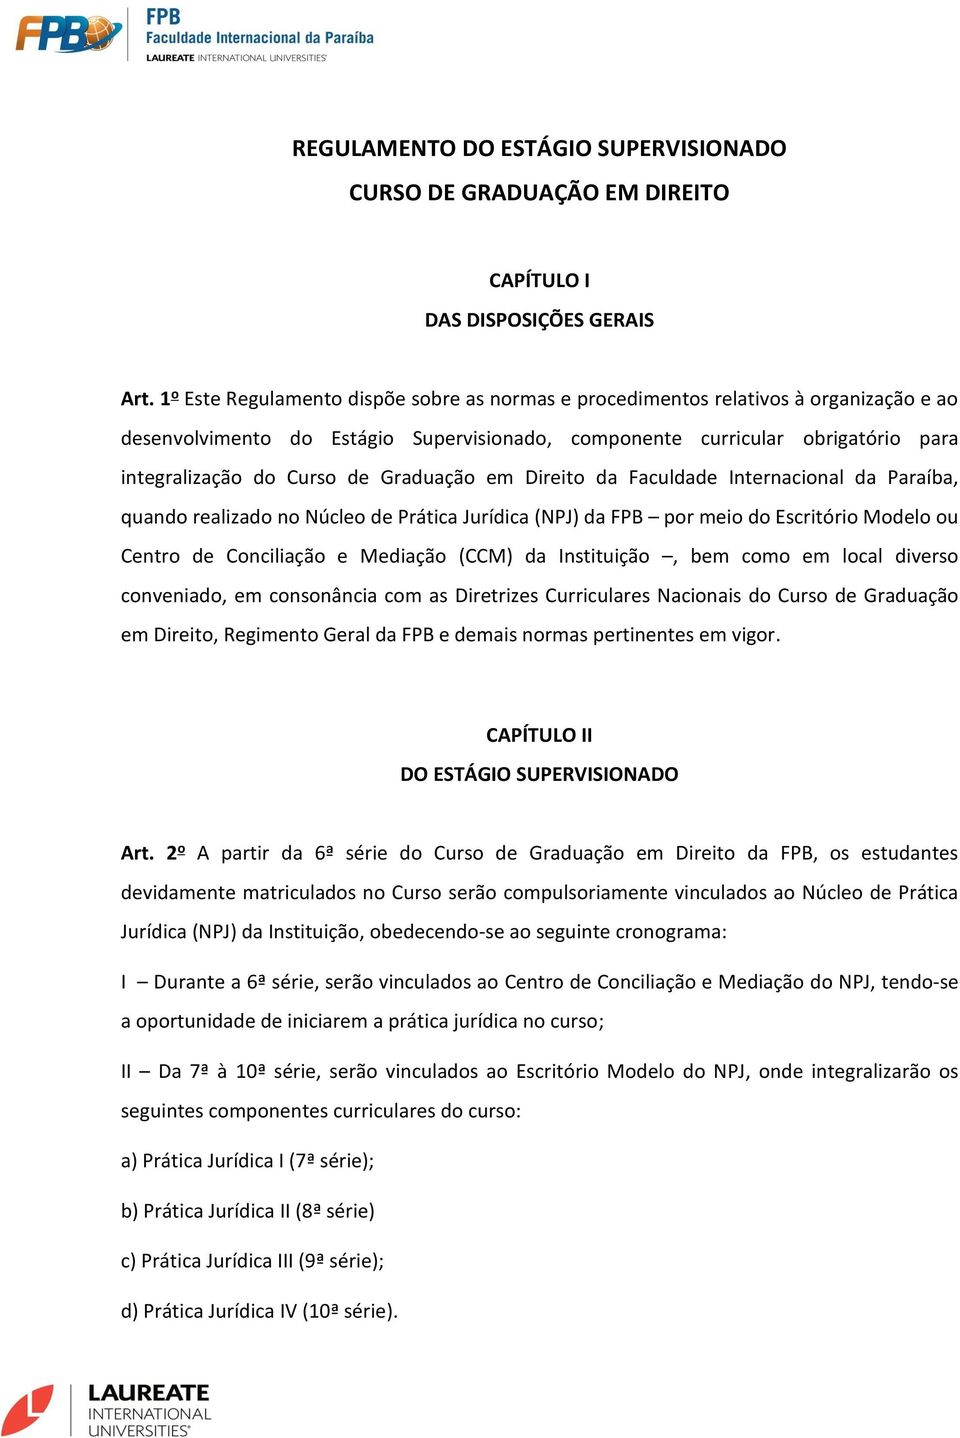 Graduação em Direito da Faculdade Internacional da Paraíba, quando realizado no Núcleo de Prática Jurídica (NPJ) da FPB por meio do Escritório Modelo ou Centro de Conciliação e Mediação (CCM) da